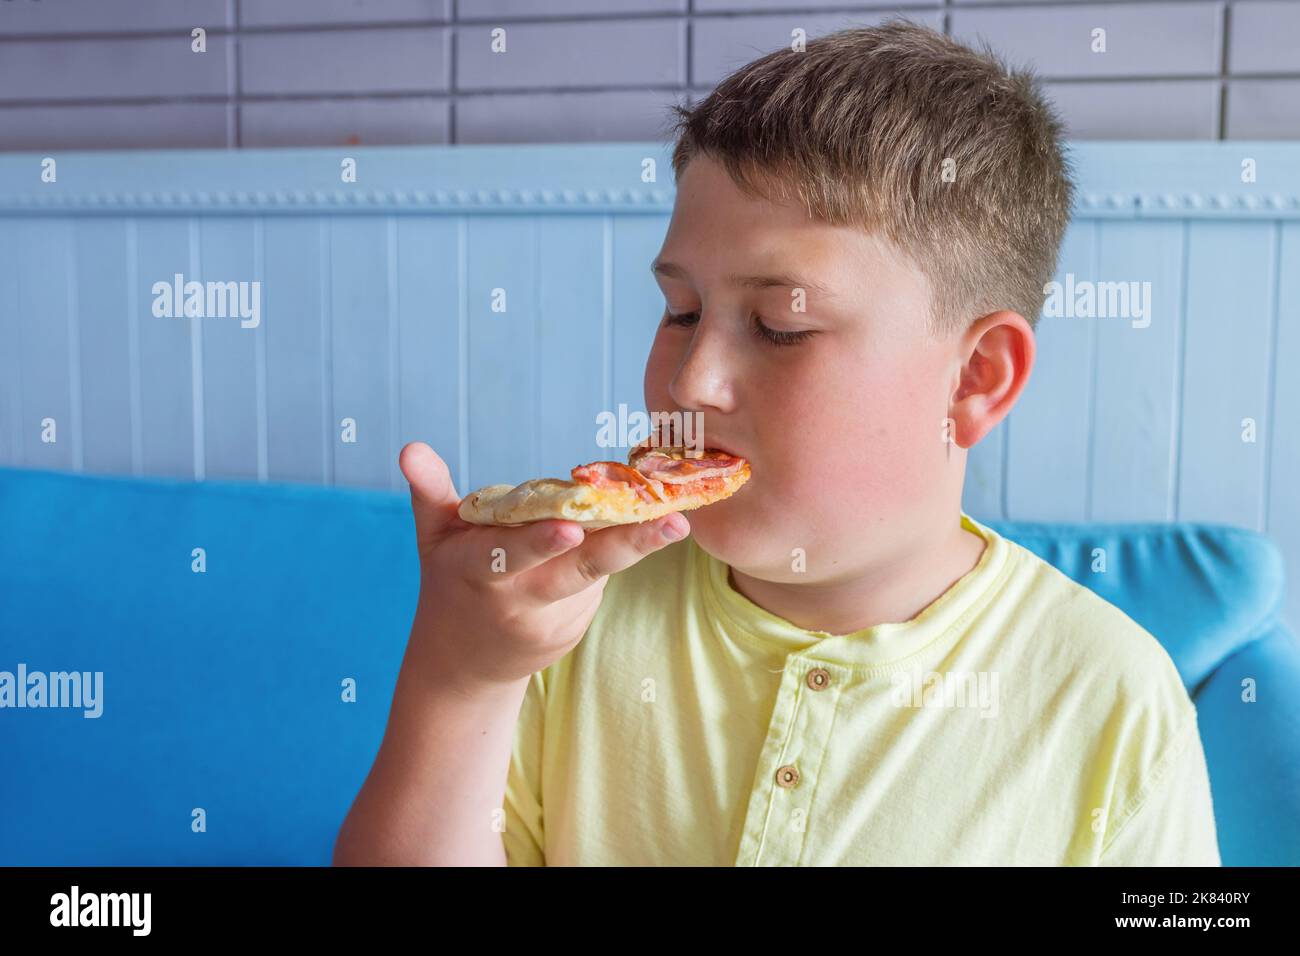 Le garçon aime manger de la pizza. Concept - obésité et régime malsain Banque D'Images